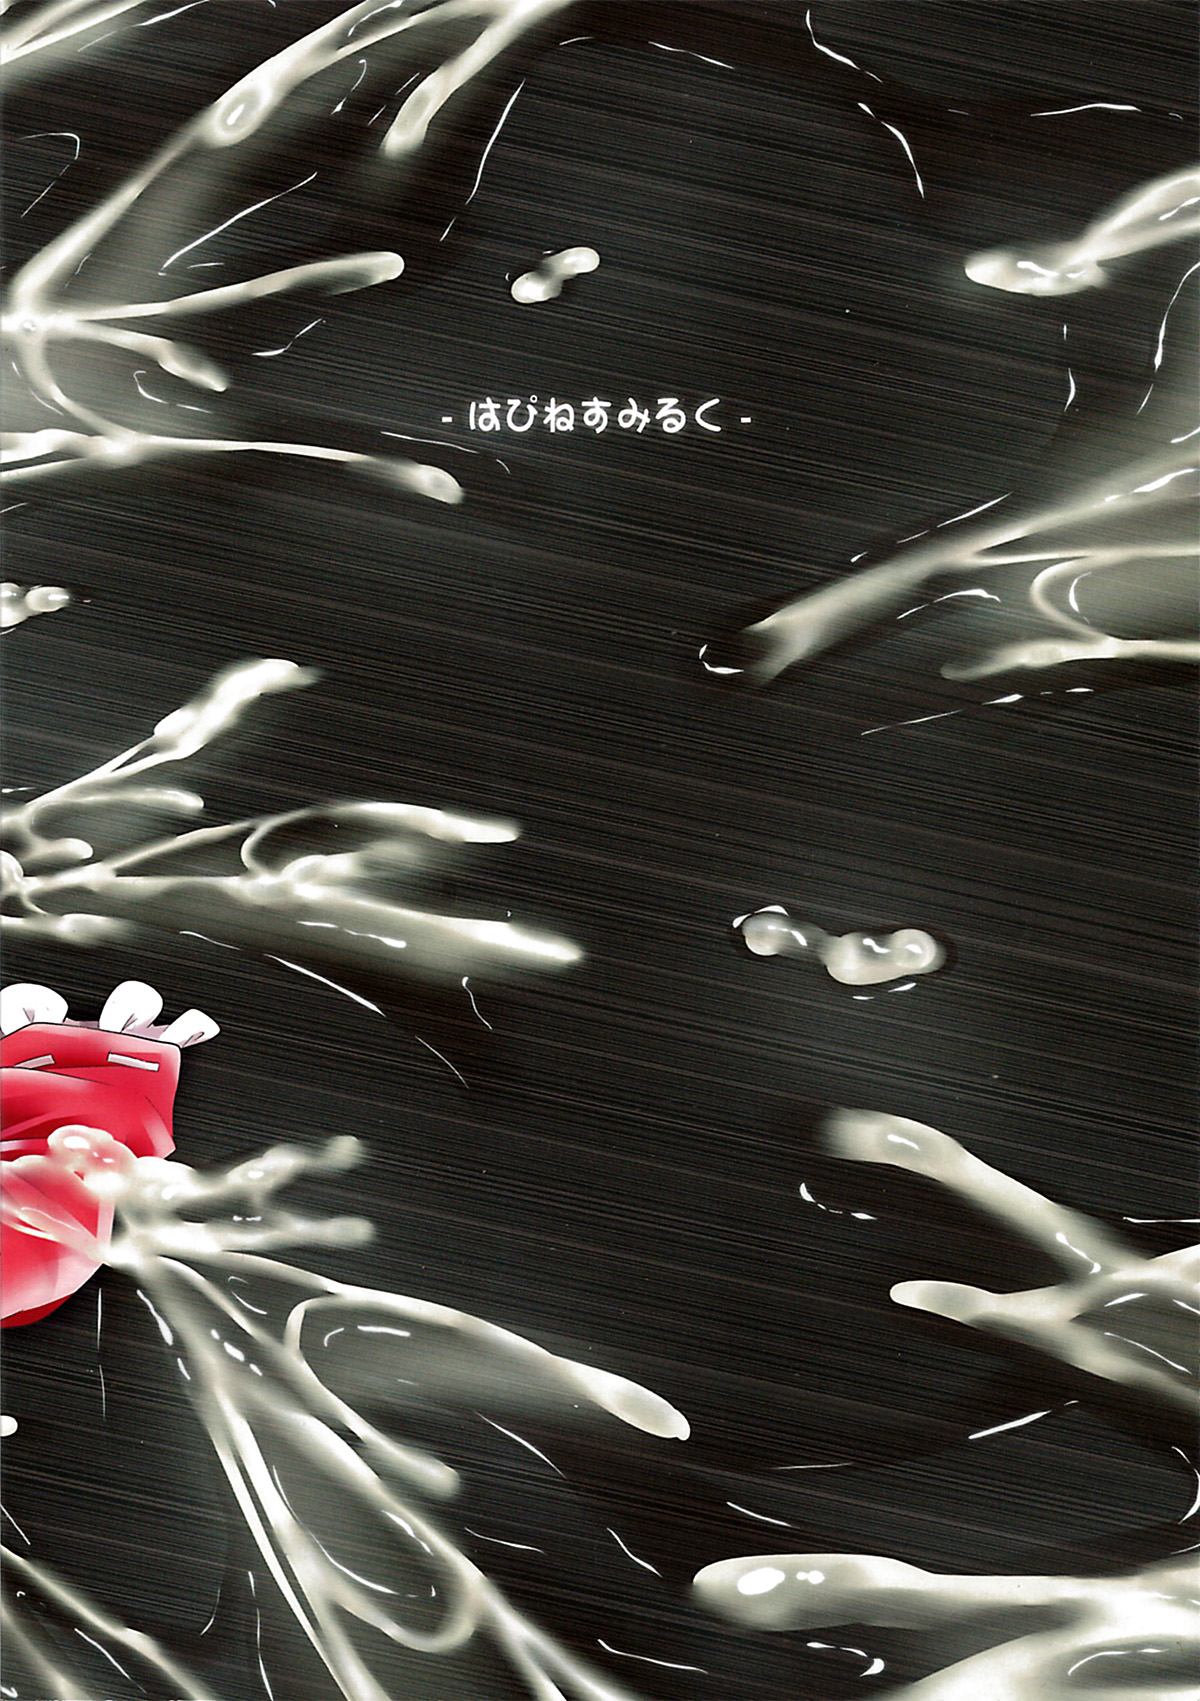 (C84) [はぴねすみるく (おびゃー)] 肉欲神仰信 - I am semen addict - (東方Project) [英訳]